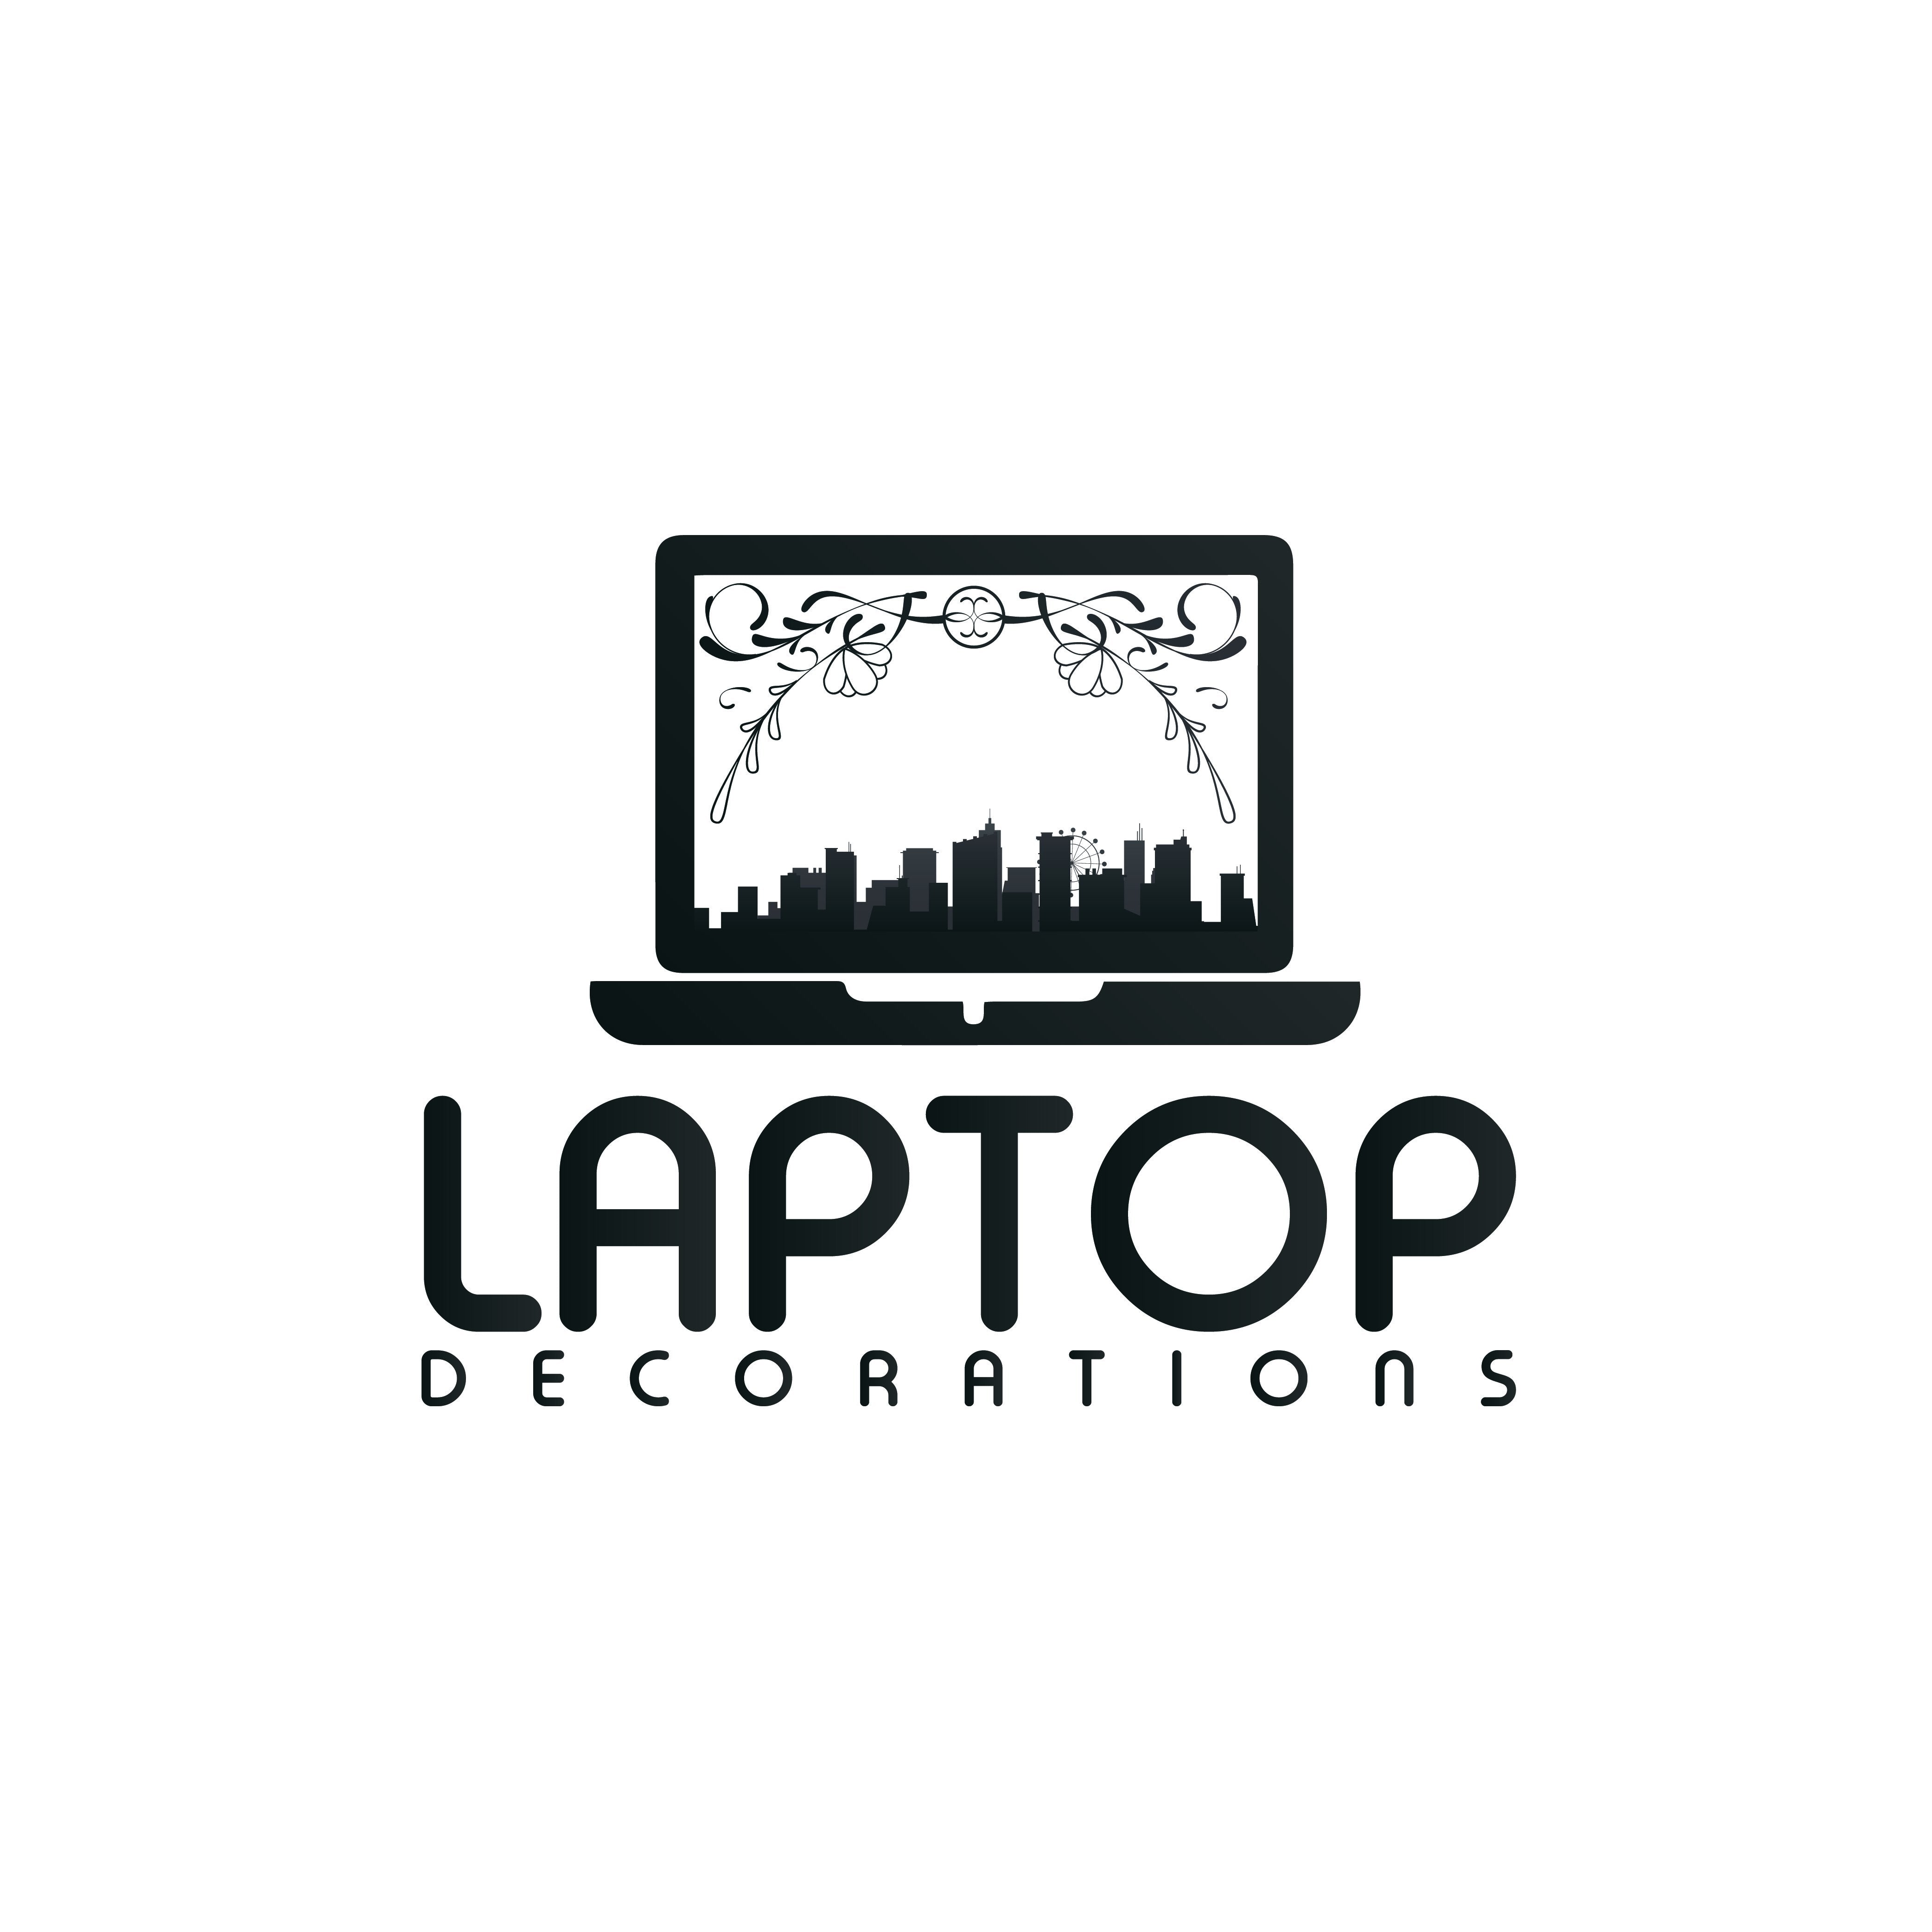 Laptop Decorations